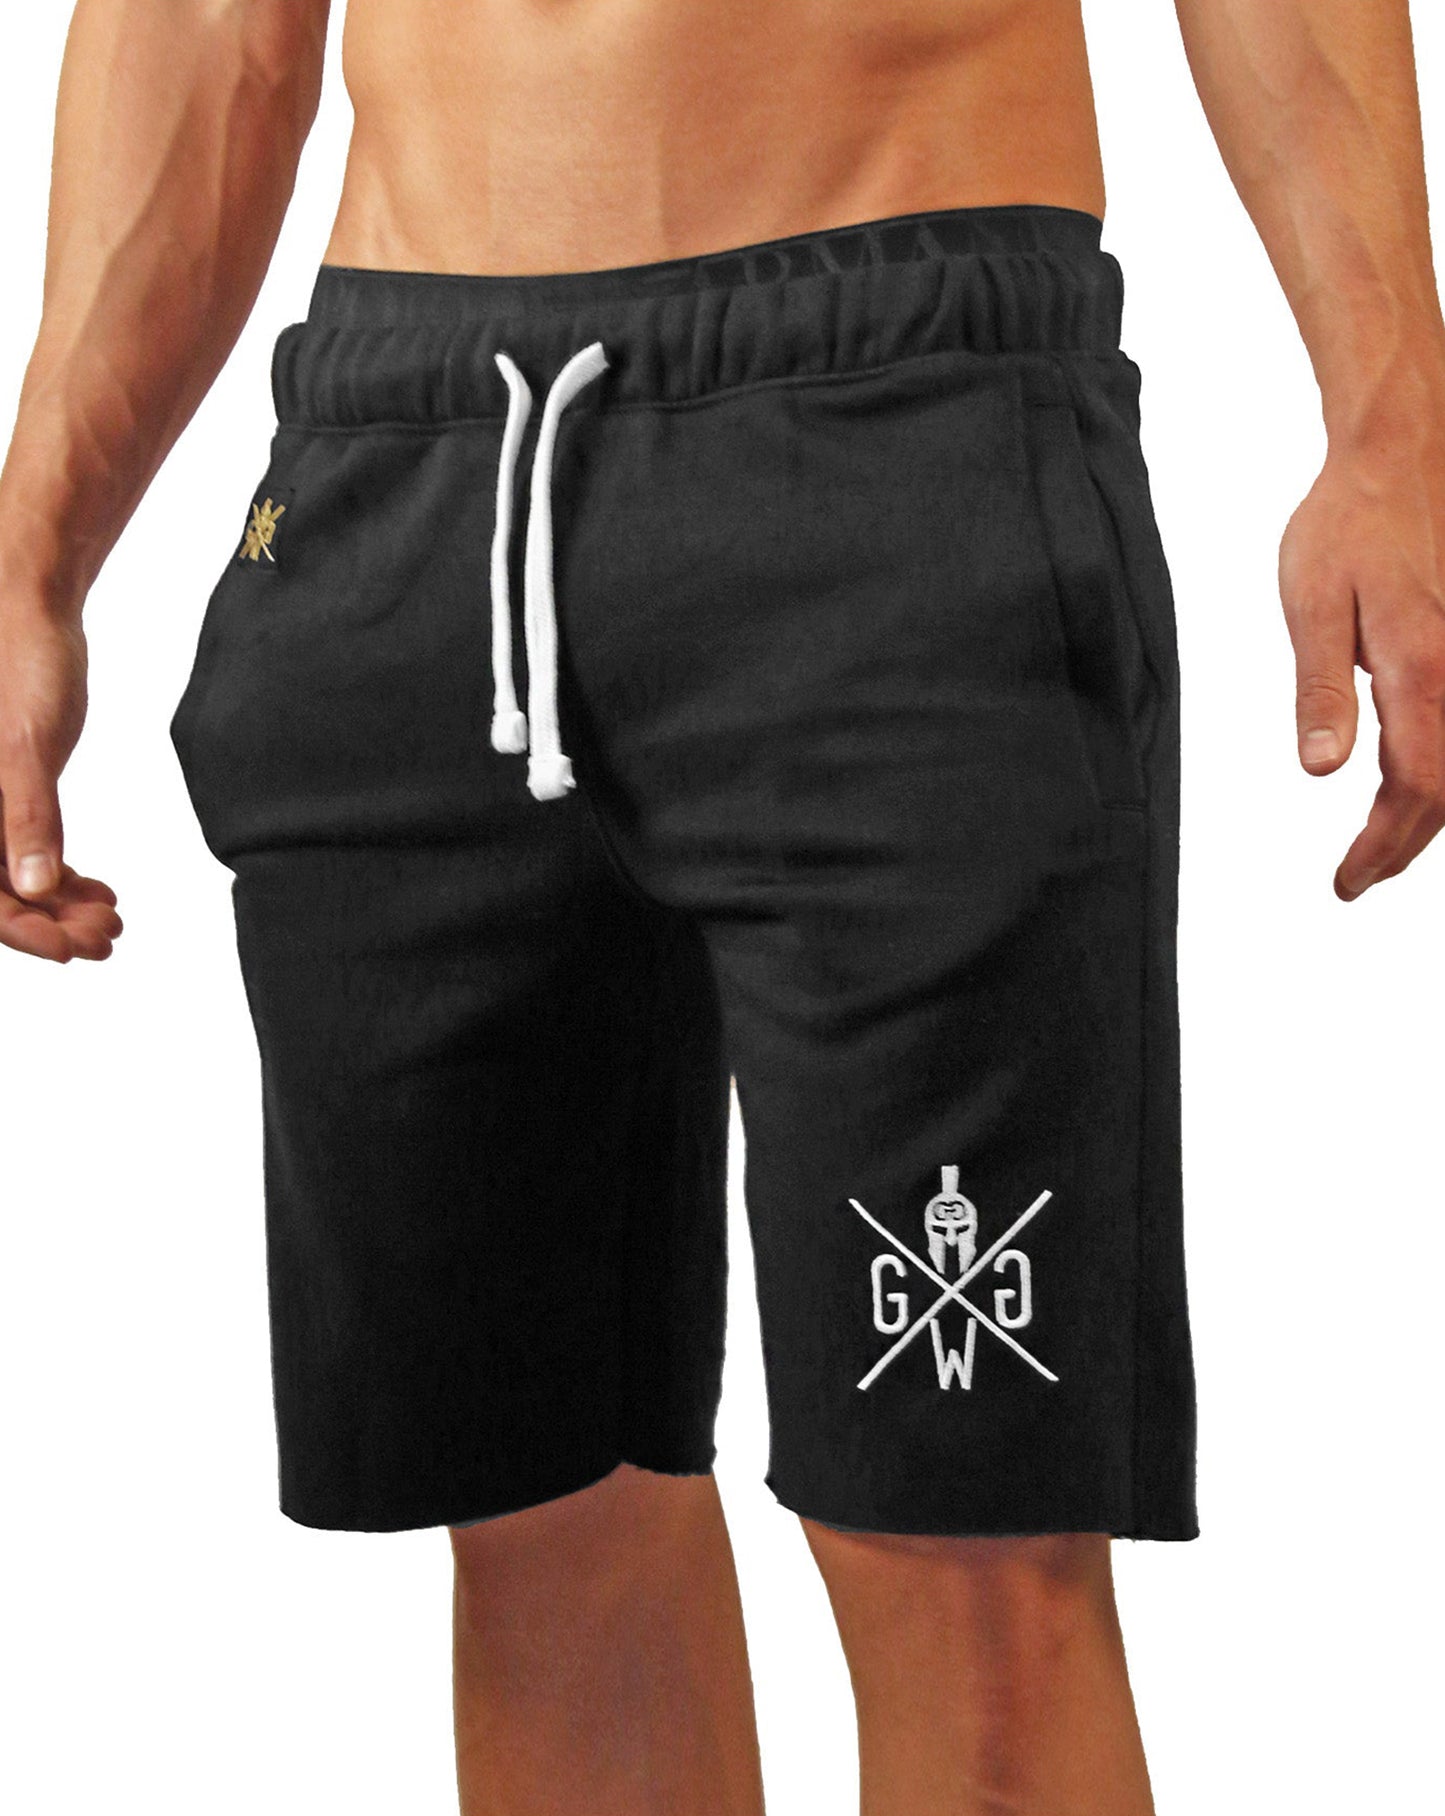 Robuste und langlebige Herren Sporthosen in Schwarz, perfekte Kombination aus Komfort und Stil, von Gym Generation.